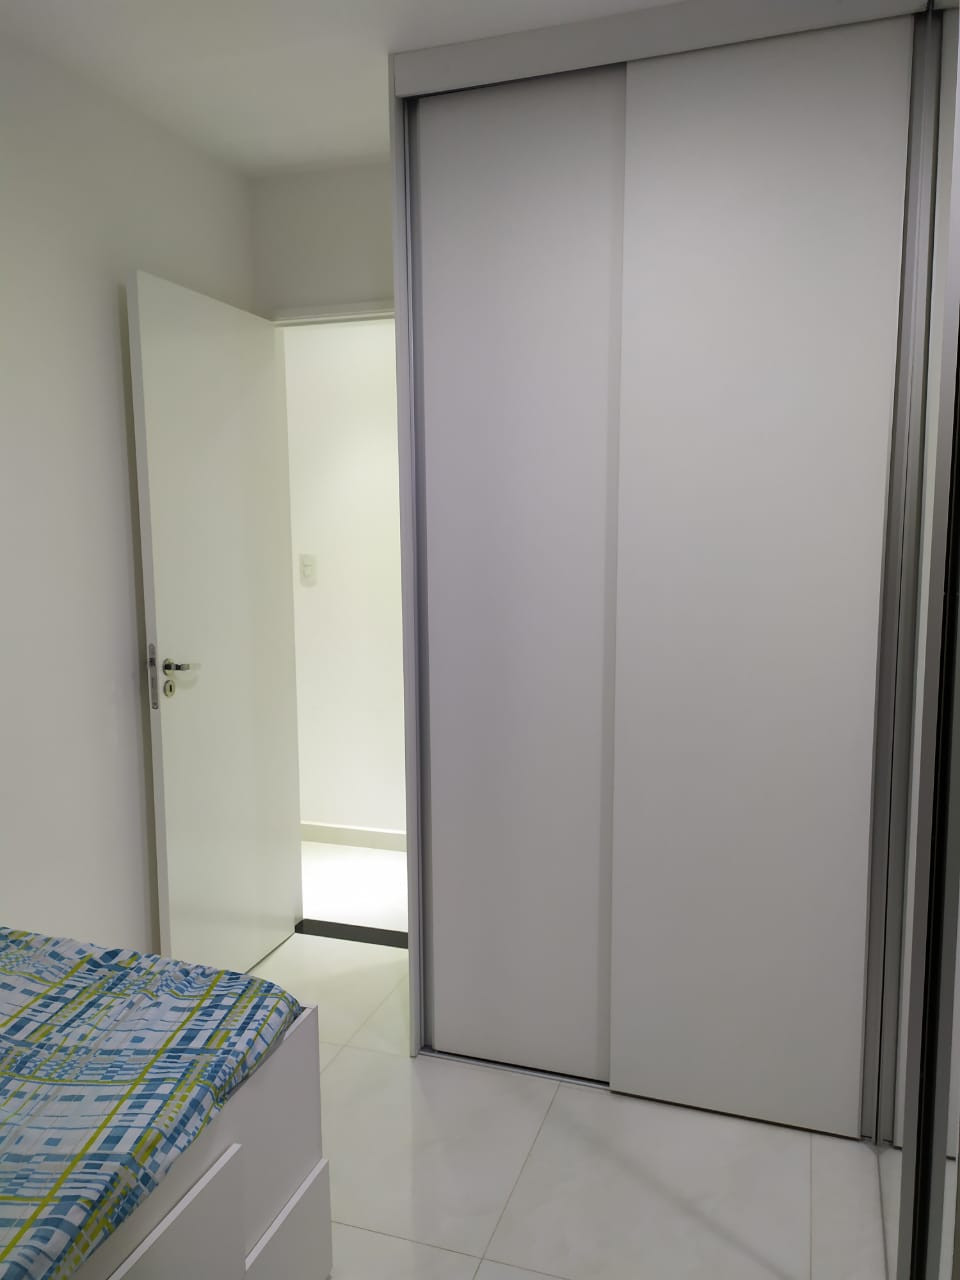 TF1082 - Lindo apartamento com 3 dormitórios na Vila Carrão. 2 vagas!!